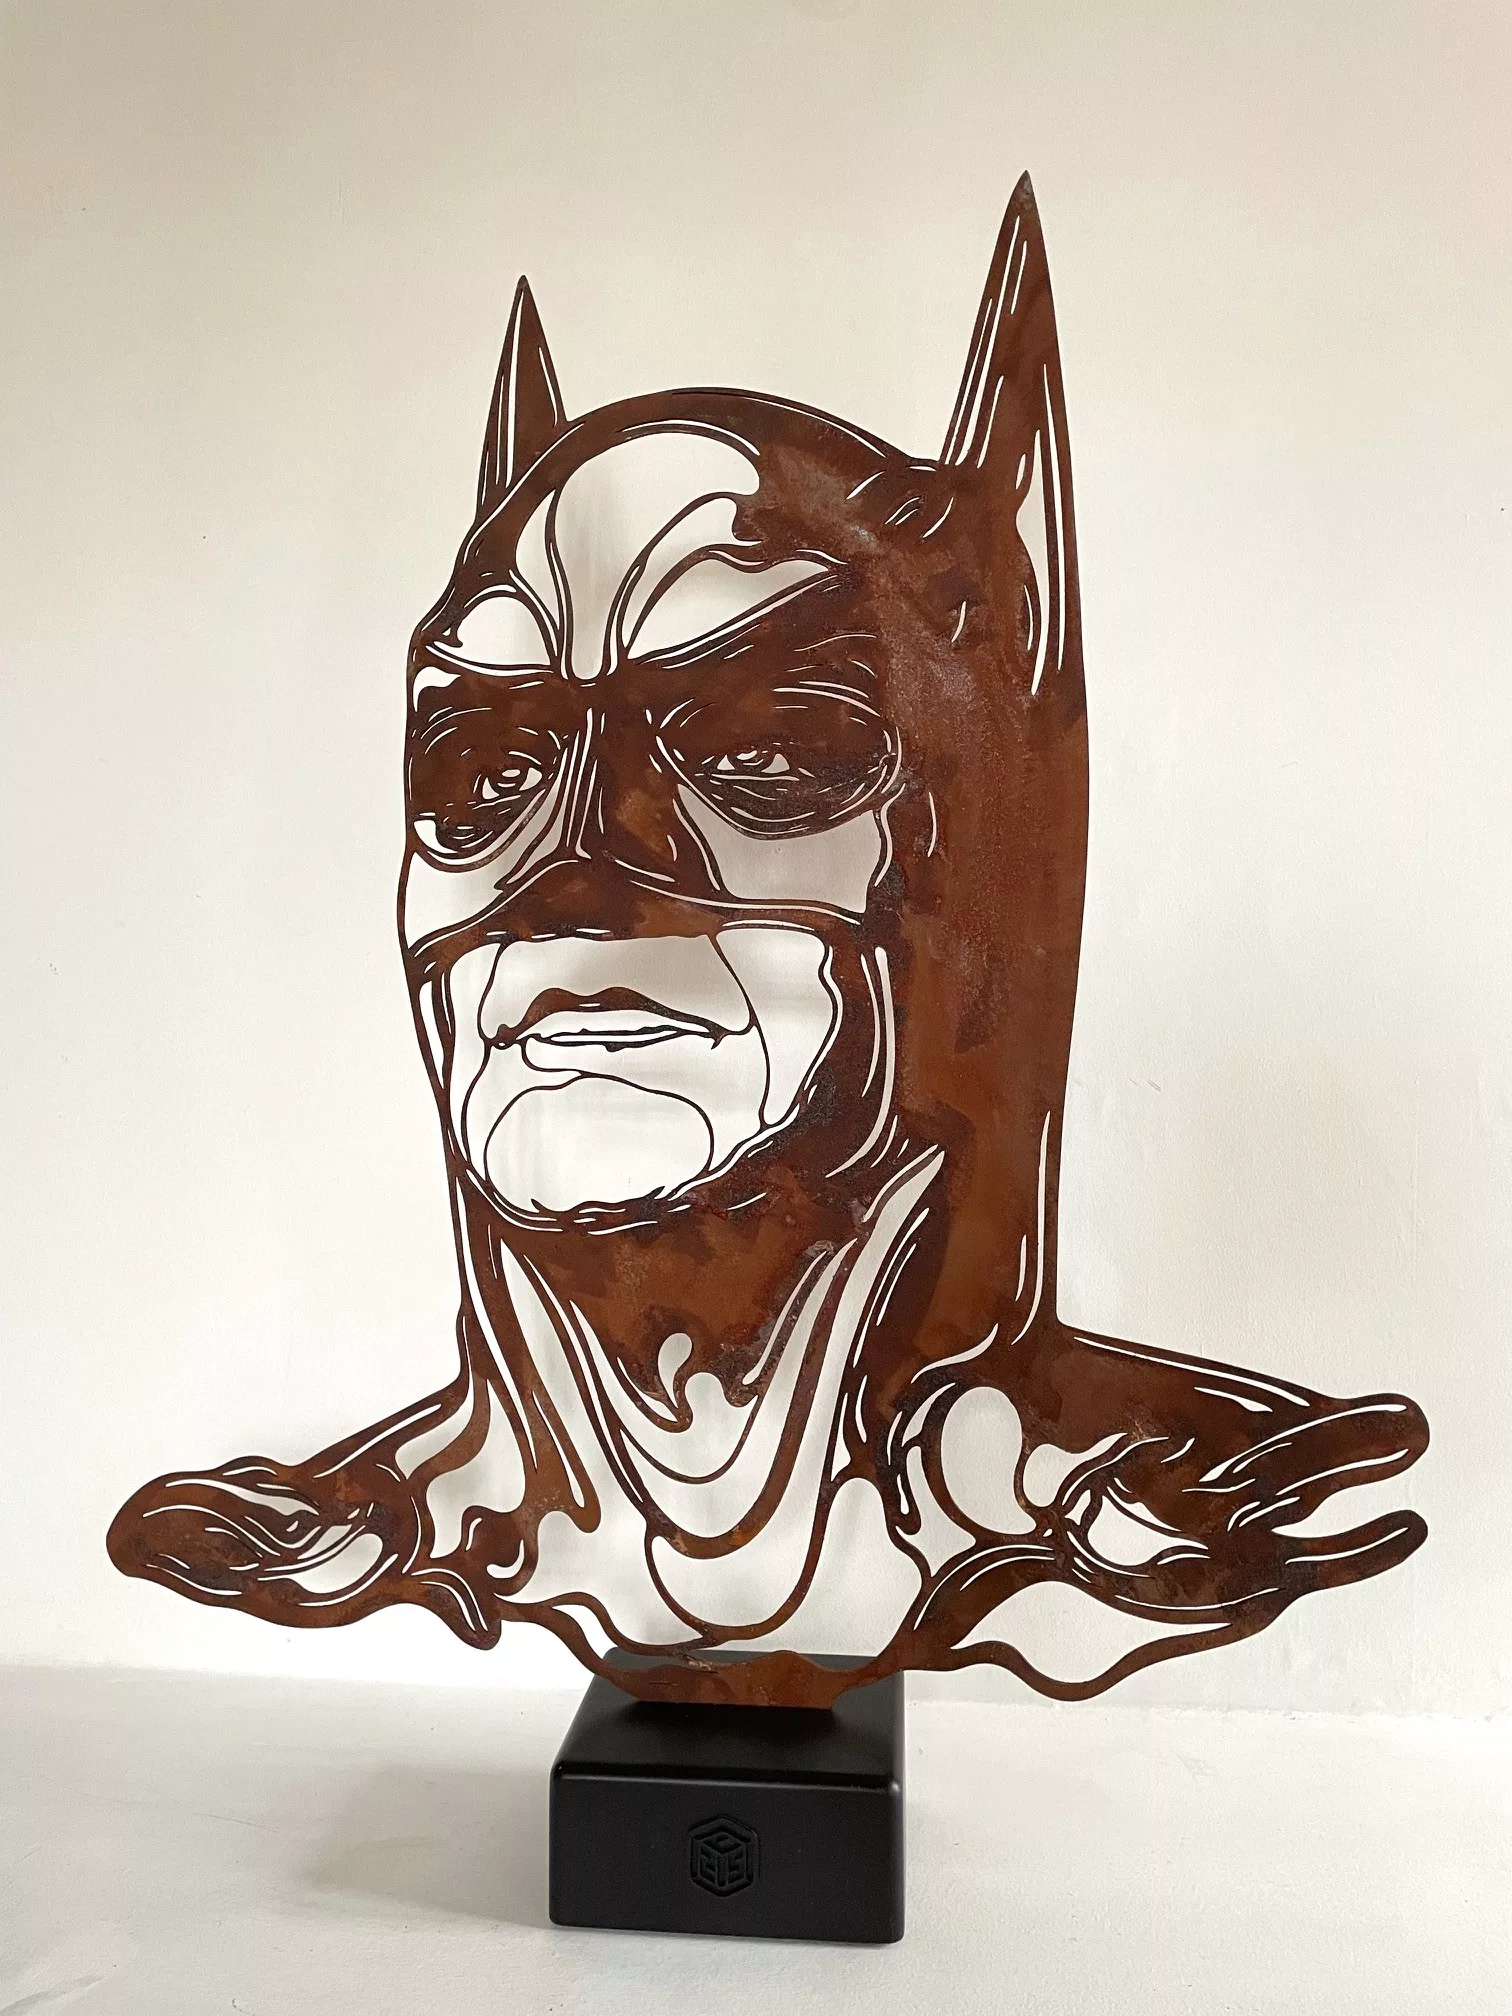 Batman sculpture, oxidized steel on base, no. 1, 64x81x13cm, C215